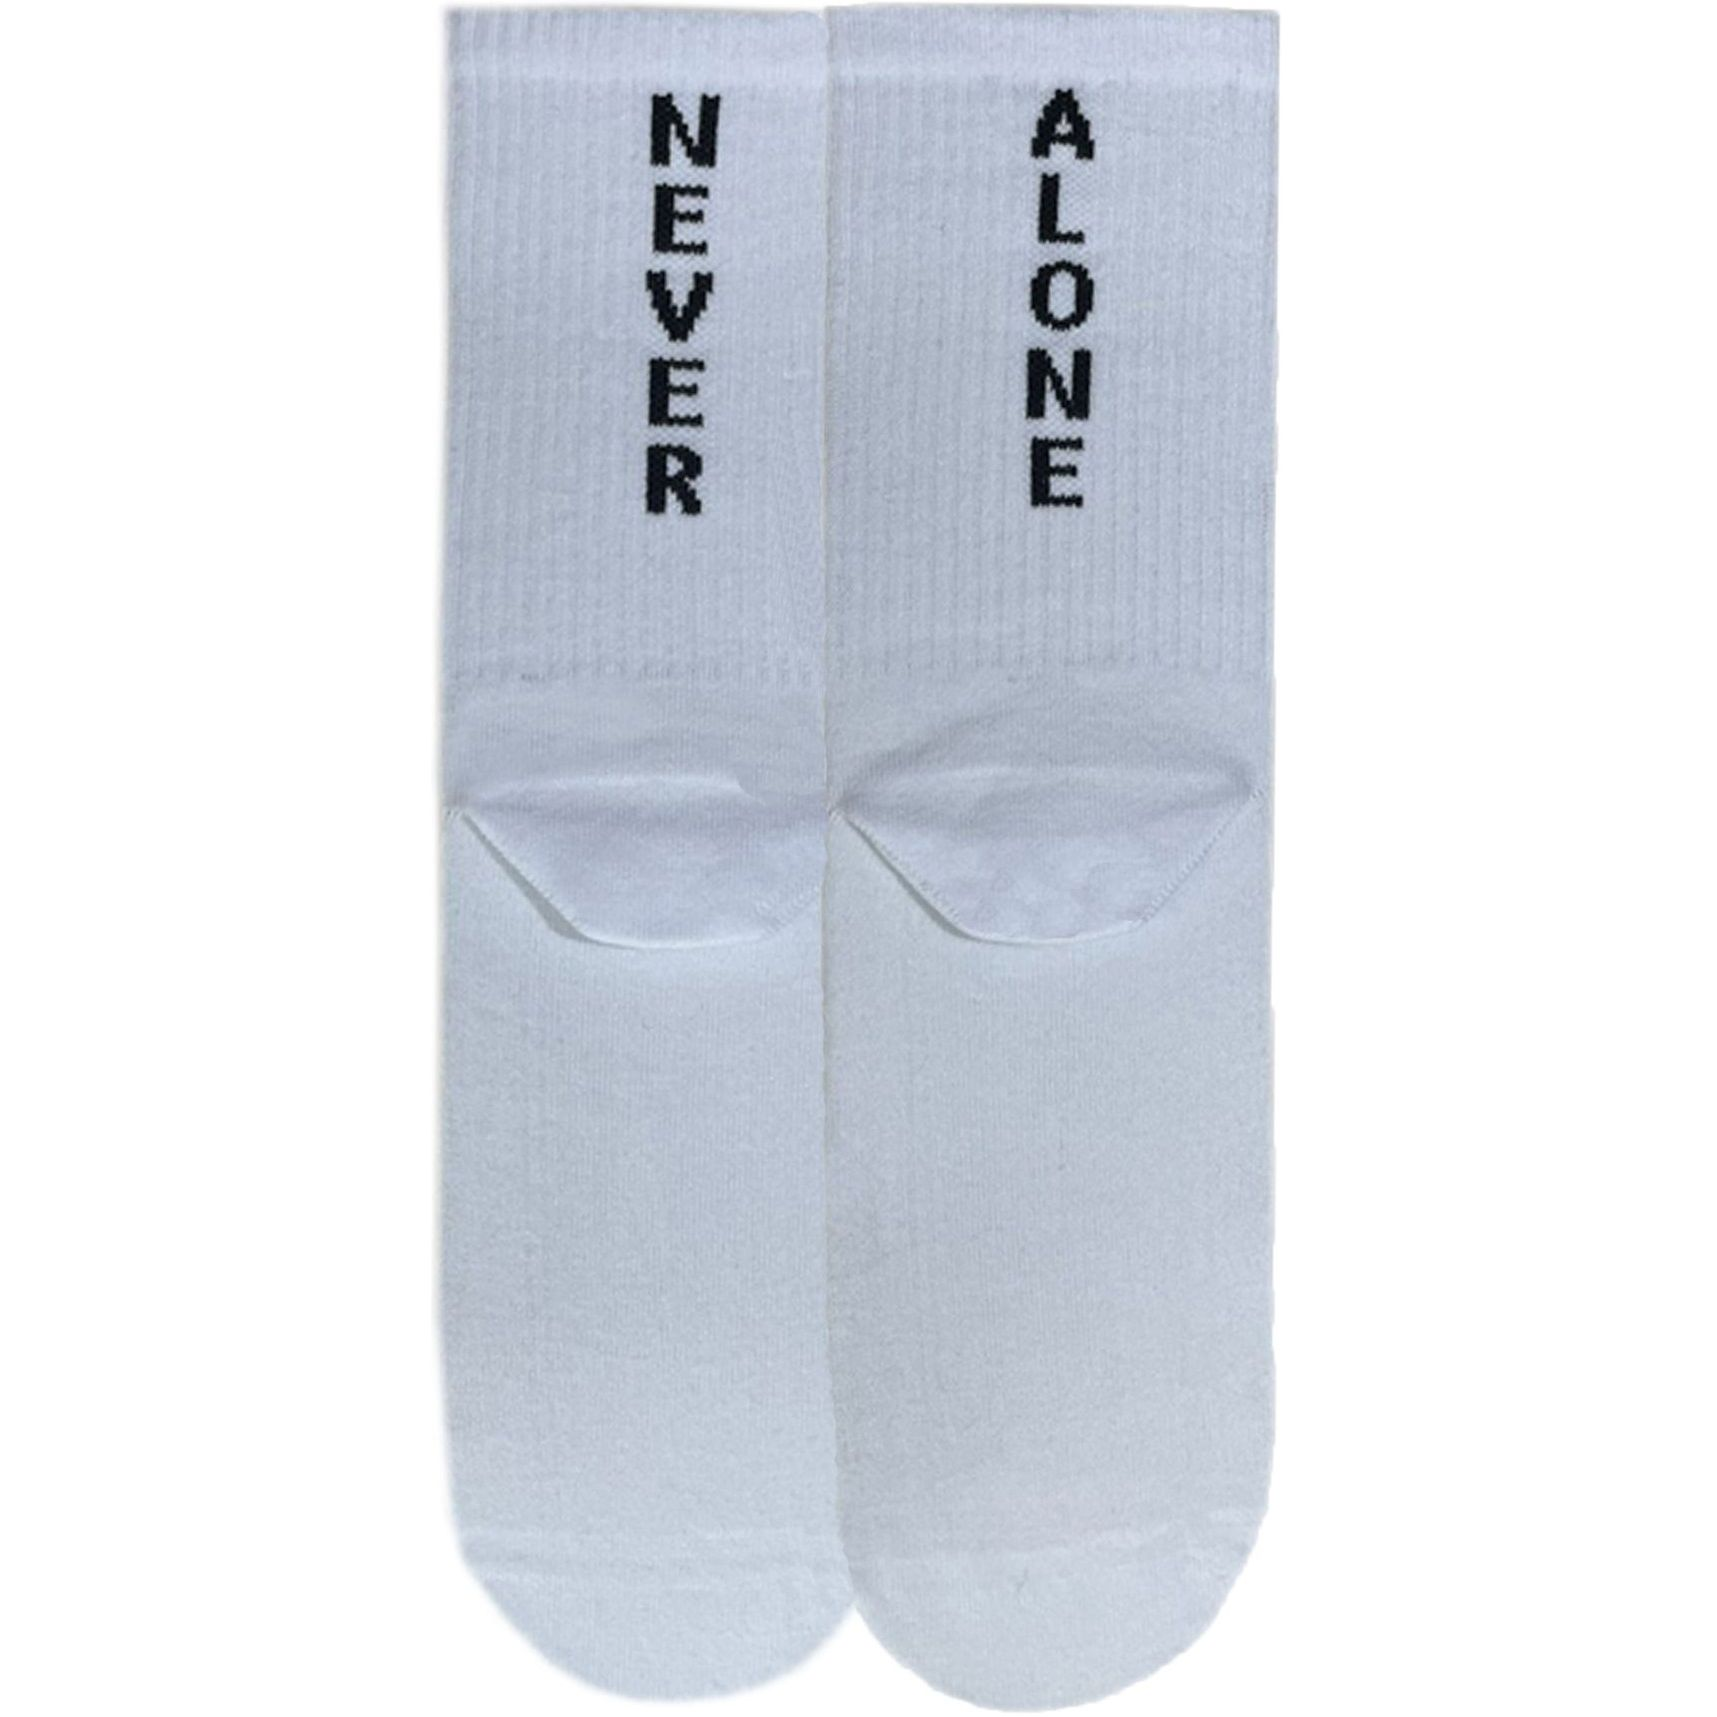 Носки мужские Premier Socks 40-41 1 пара белые с принтом (4820163317915) фото 1